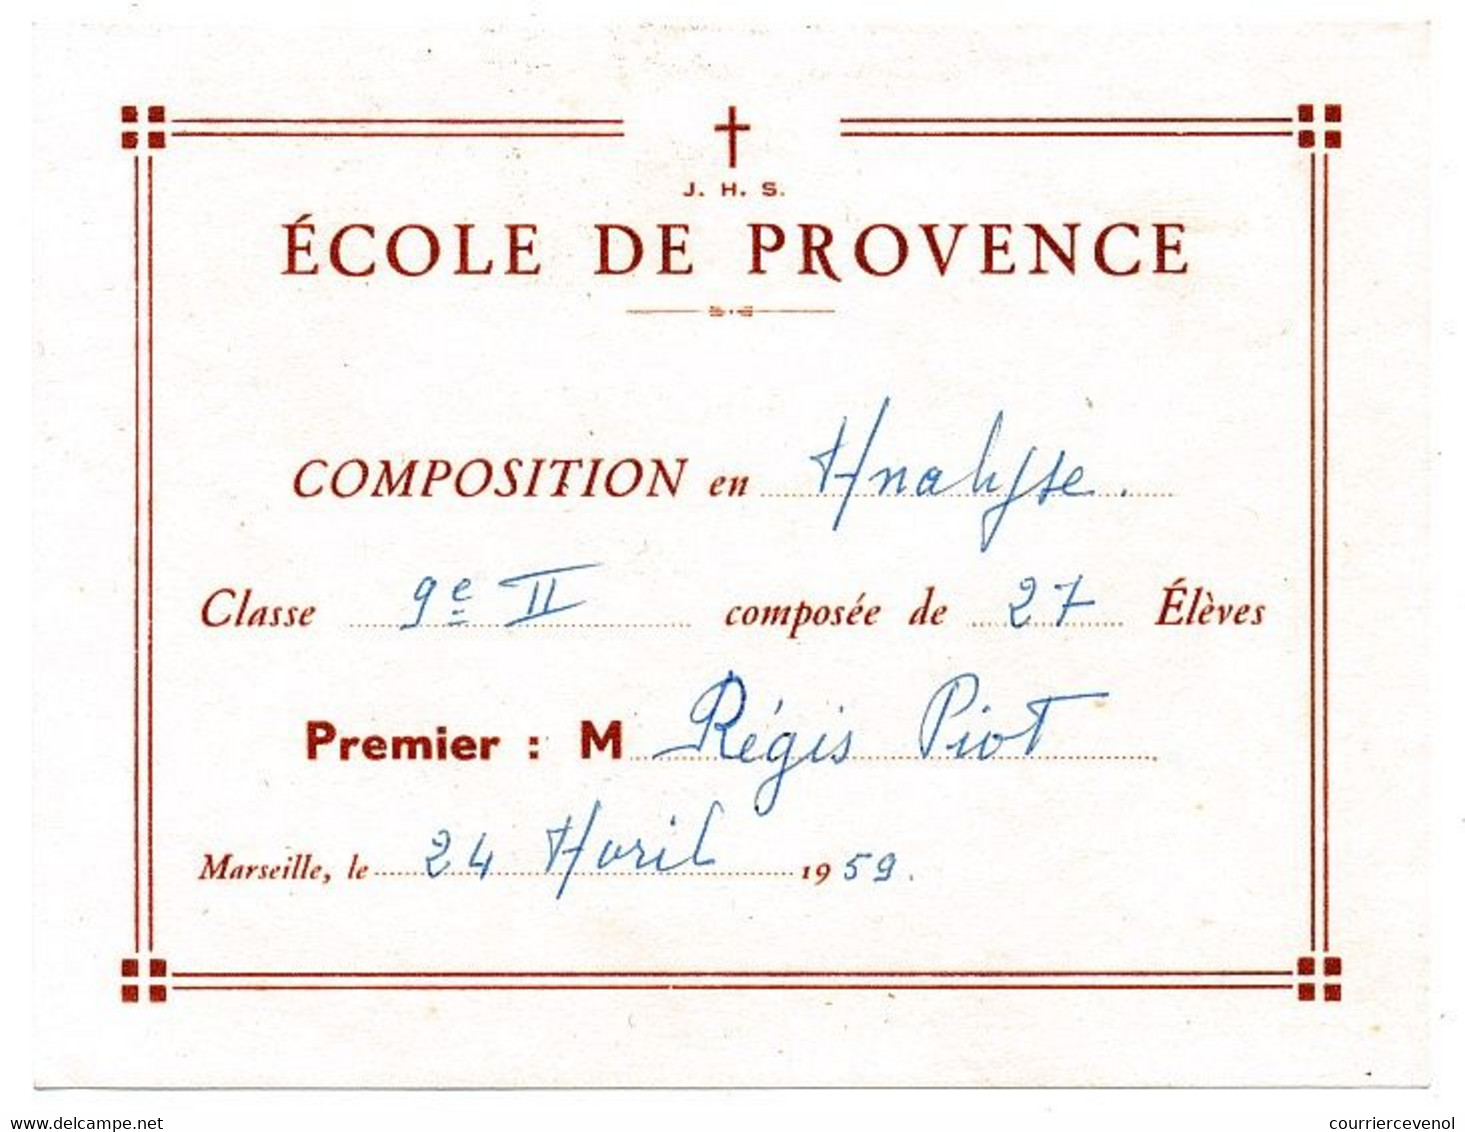 MARSEILLE - Ecole De Provence - 3 Bulletins / 1 "Premier" / 2 "Second" - 9 Cm X 11,8 Cm - 1958/59 - Diplome Und Schulzeugnisse